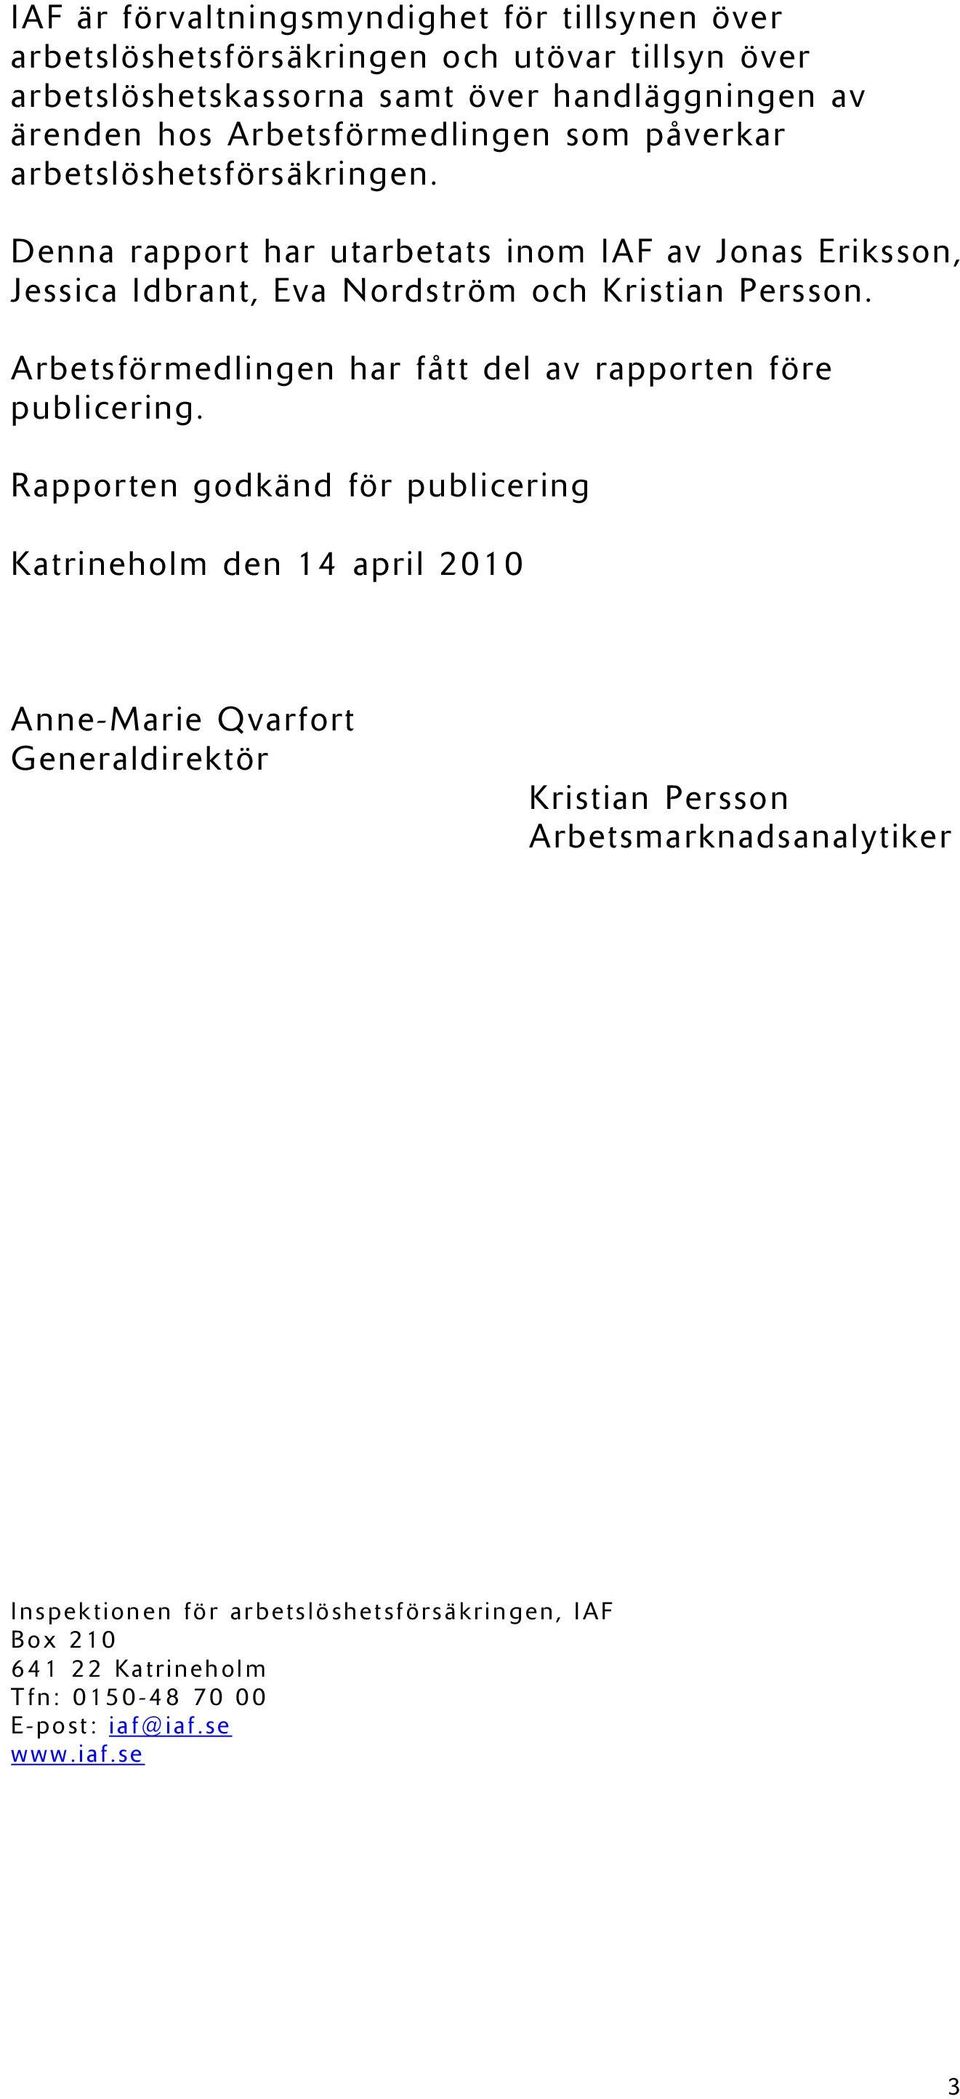 Denna rapport har utarbetats inom IAF av Jonas Eriksson, Jessica Idbrant, Eva Nordström och Kristian Persson.